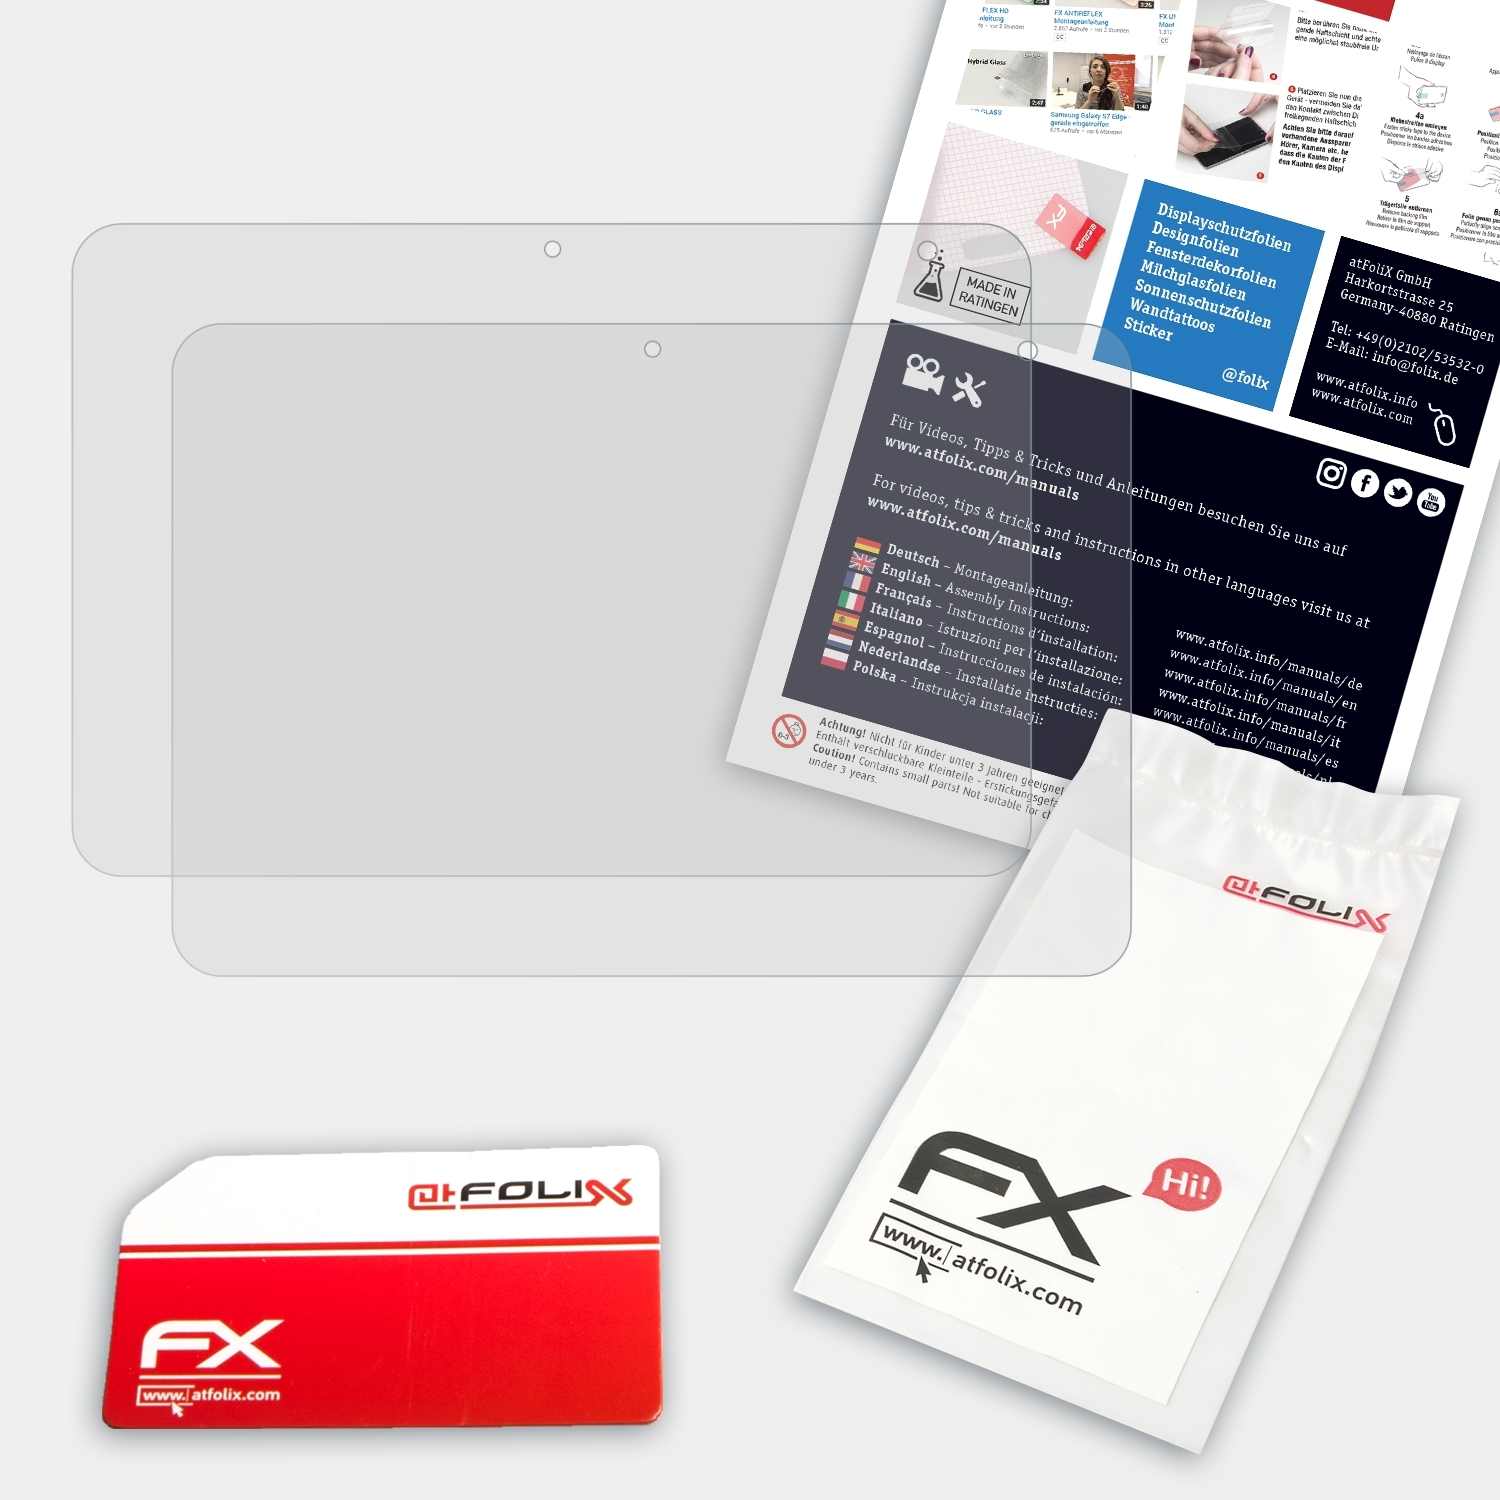 FX-Antireflex Displayschutz(für G2) ATFOLIX HP 2x ElitePad 1000